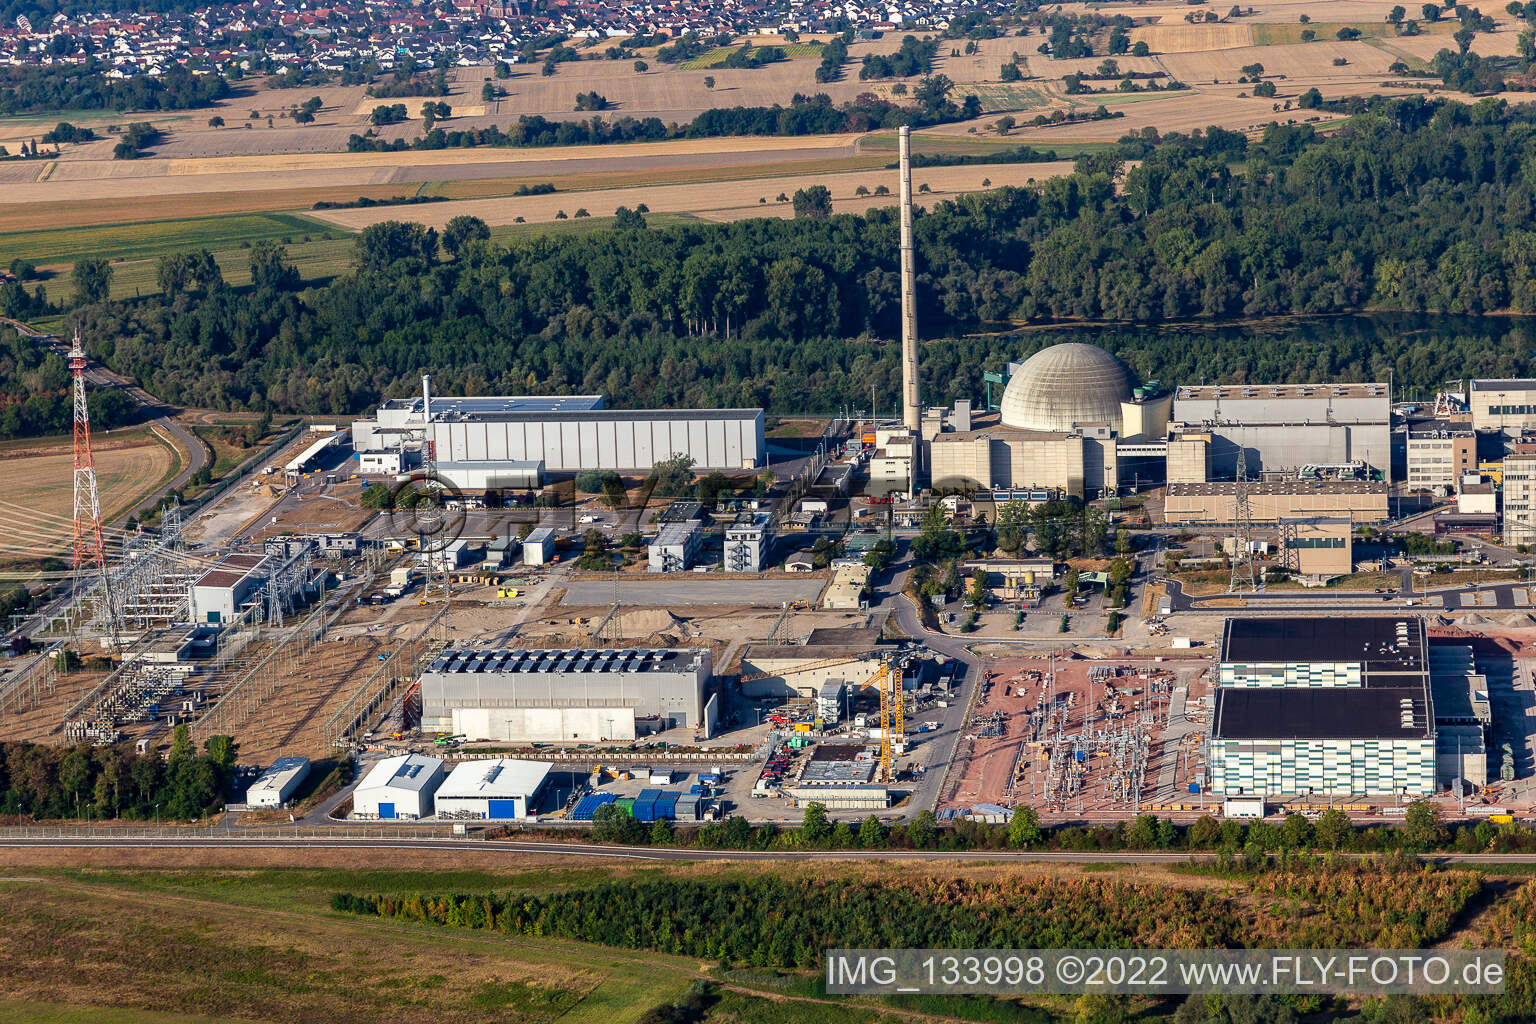 TransnetBW GmbH, sous-station à courant continu sur le site de la centrale nucléaire déclassée Philippsburg à Philippsburg dans le département Bade-Wurtemberg, Allemagne hors des airs